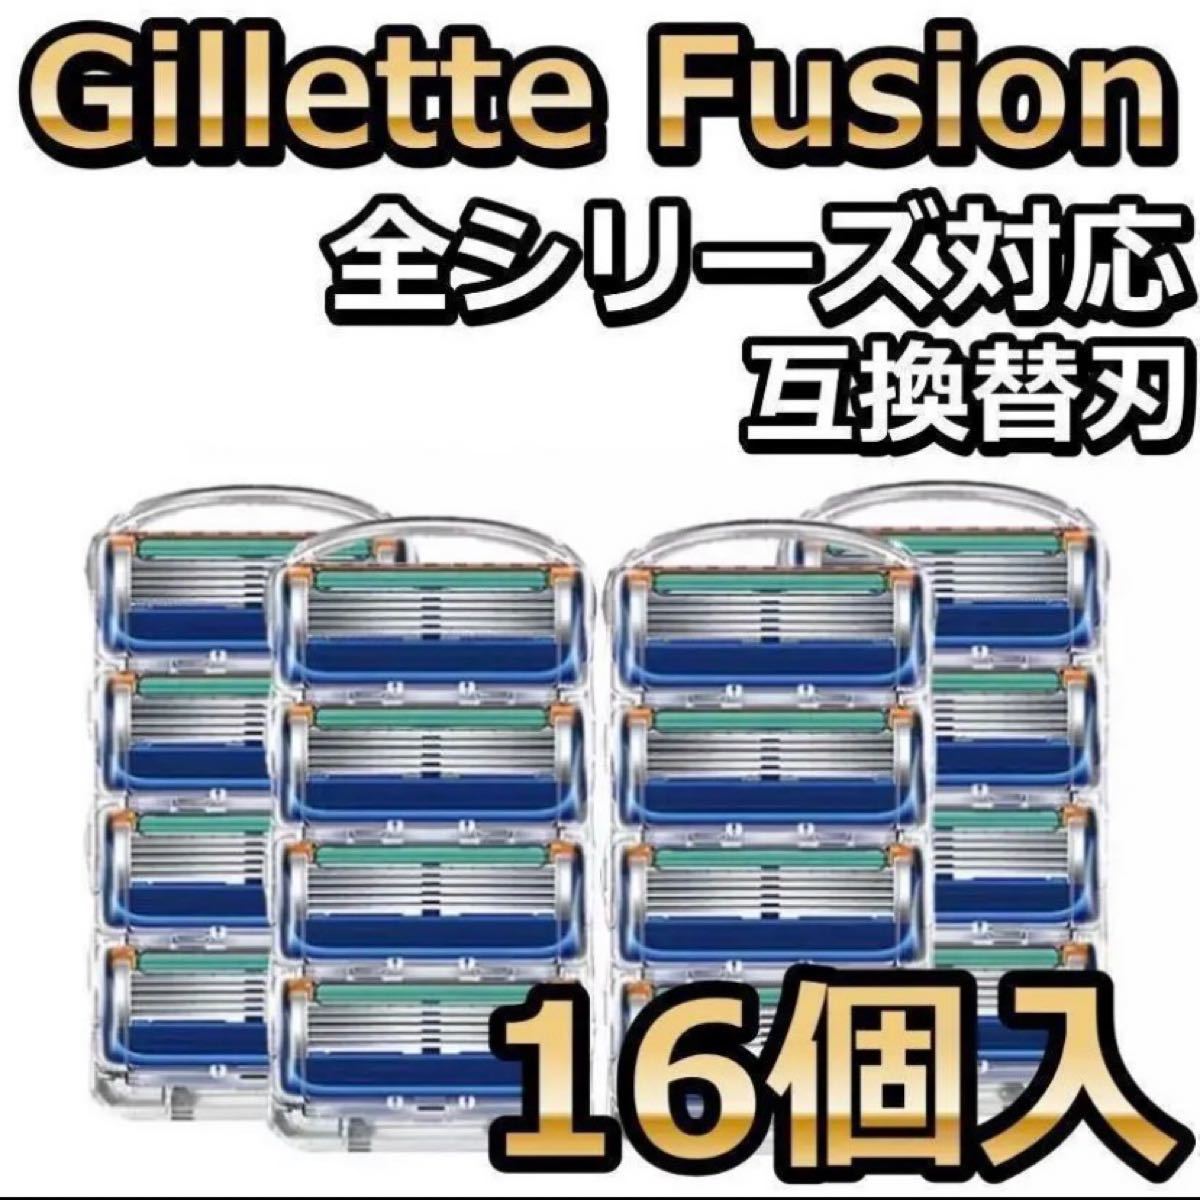 公式通販にて購入新品 Gillette Actas plus ジレットアクタスプラス替刃27個 その他